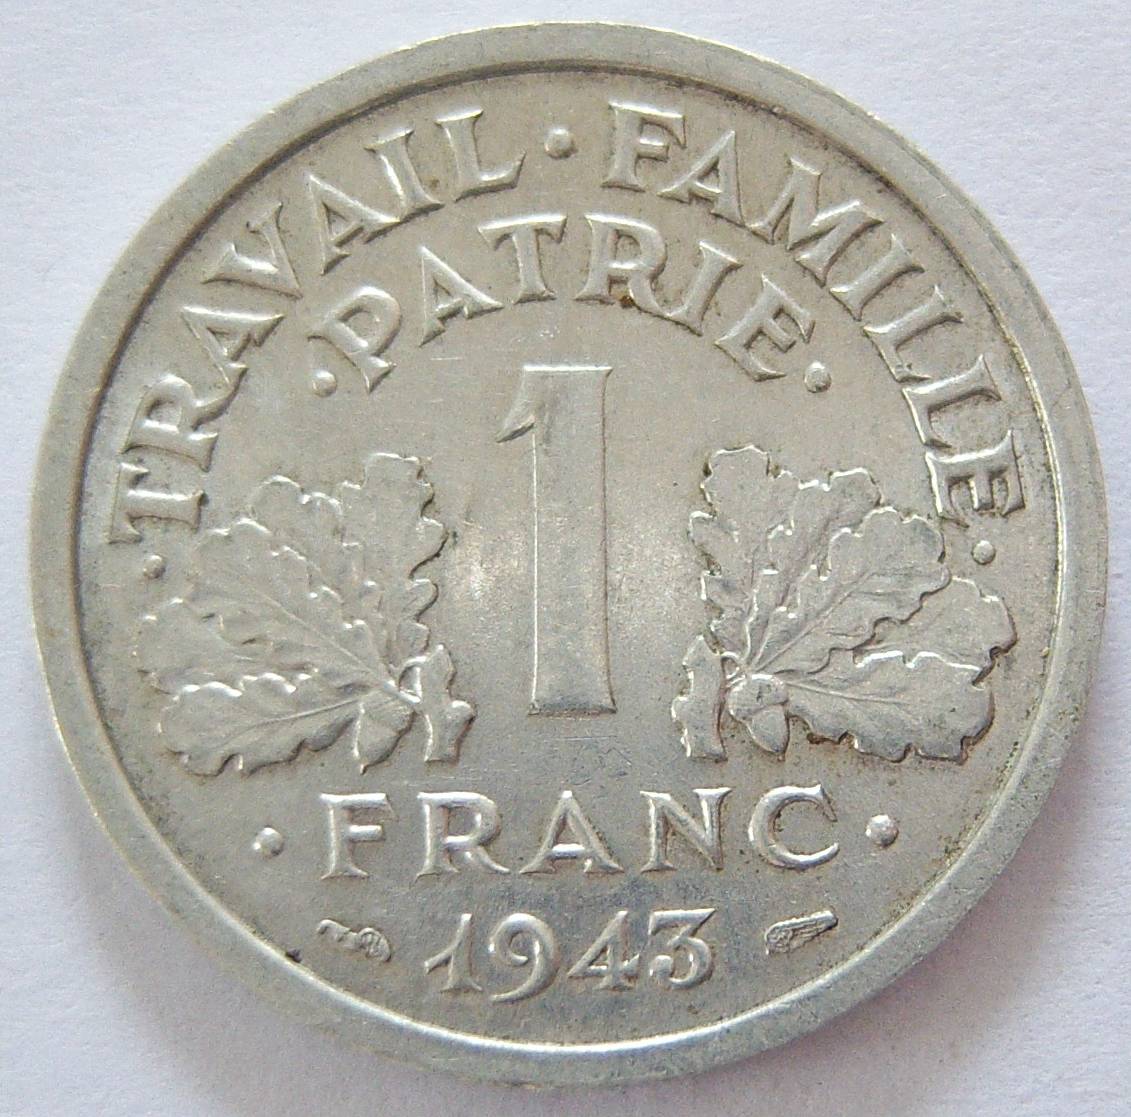  Frankreich 1 Franc 1943   